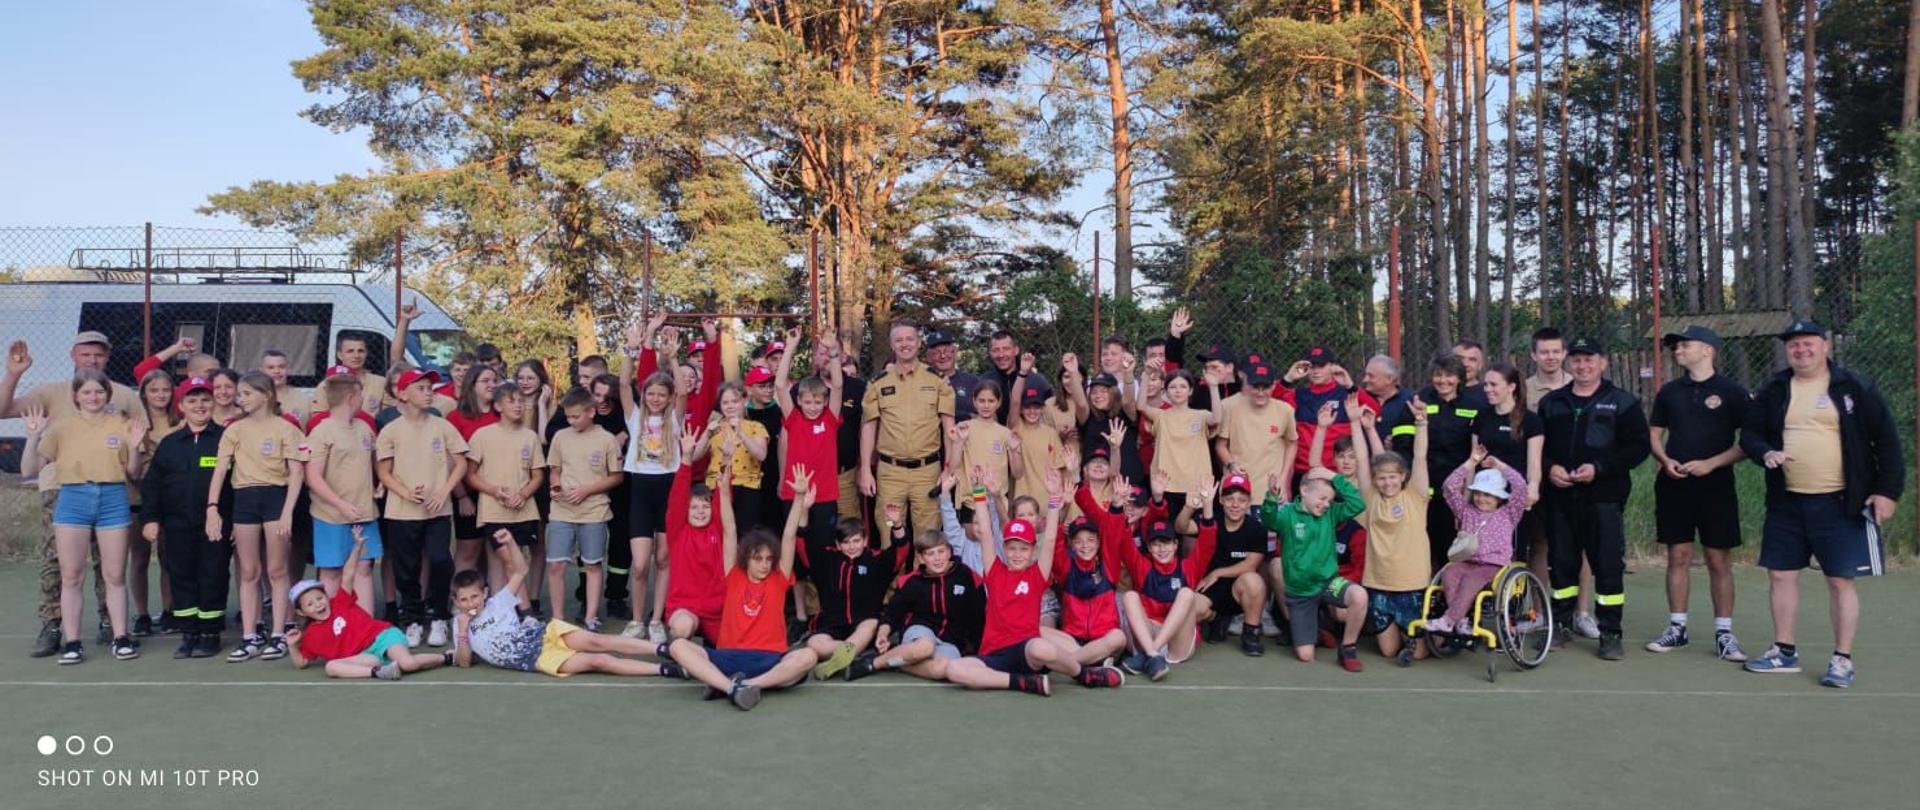 Obóz szkoleniowy Młodzieżowych Drużyn Pożarniczych z terenu powiatu chełmińskiego w miejscowości Wiele, województwo pomorskie. 